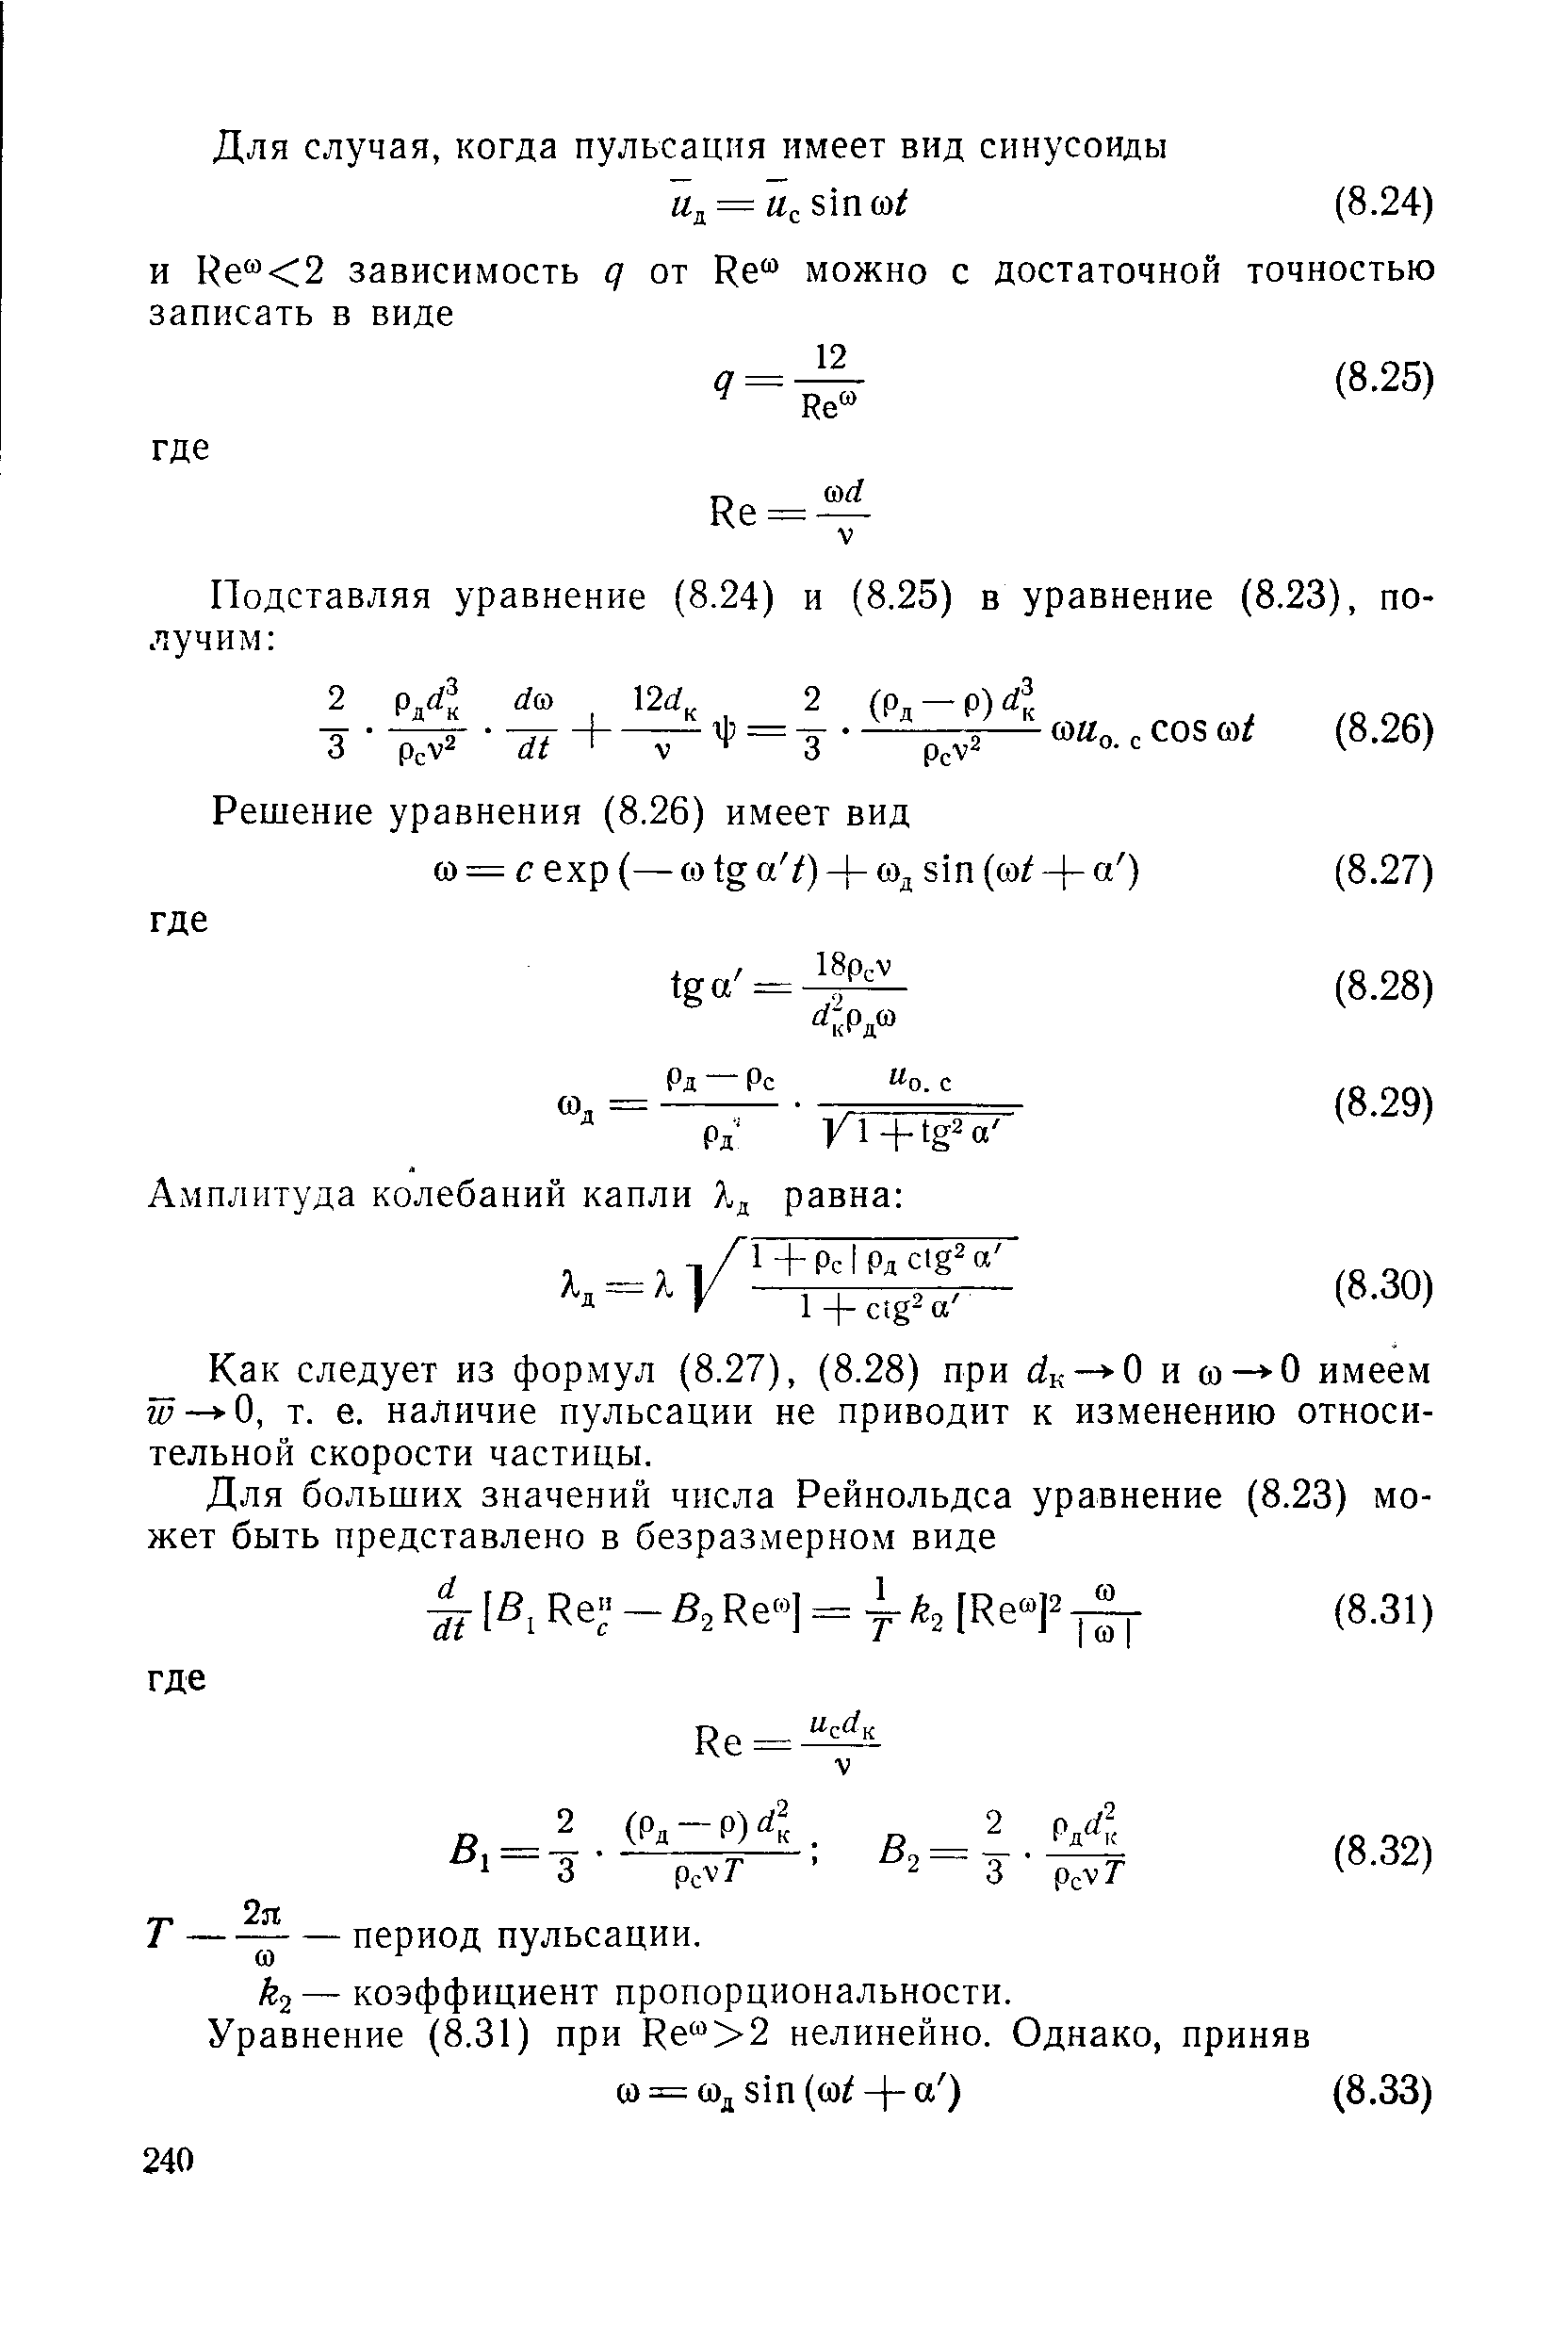 Как следует из формул (8.27), (8.28) при йк— О и со— -0 имеем м — -О, т. е. наличие пульсации не приводит к изменению относительной скорости частицы.